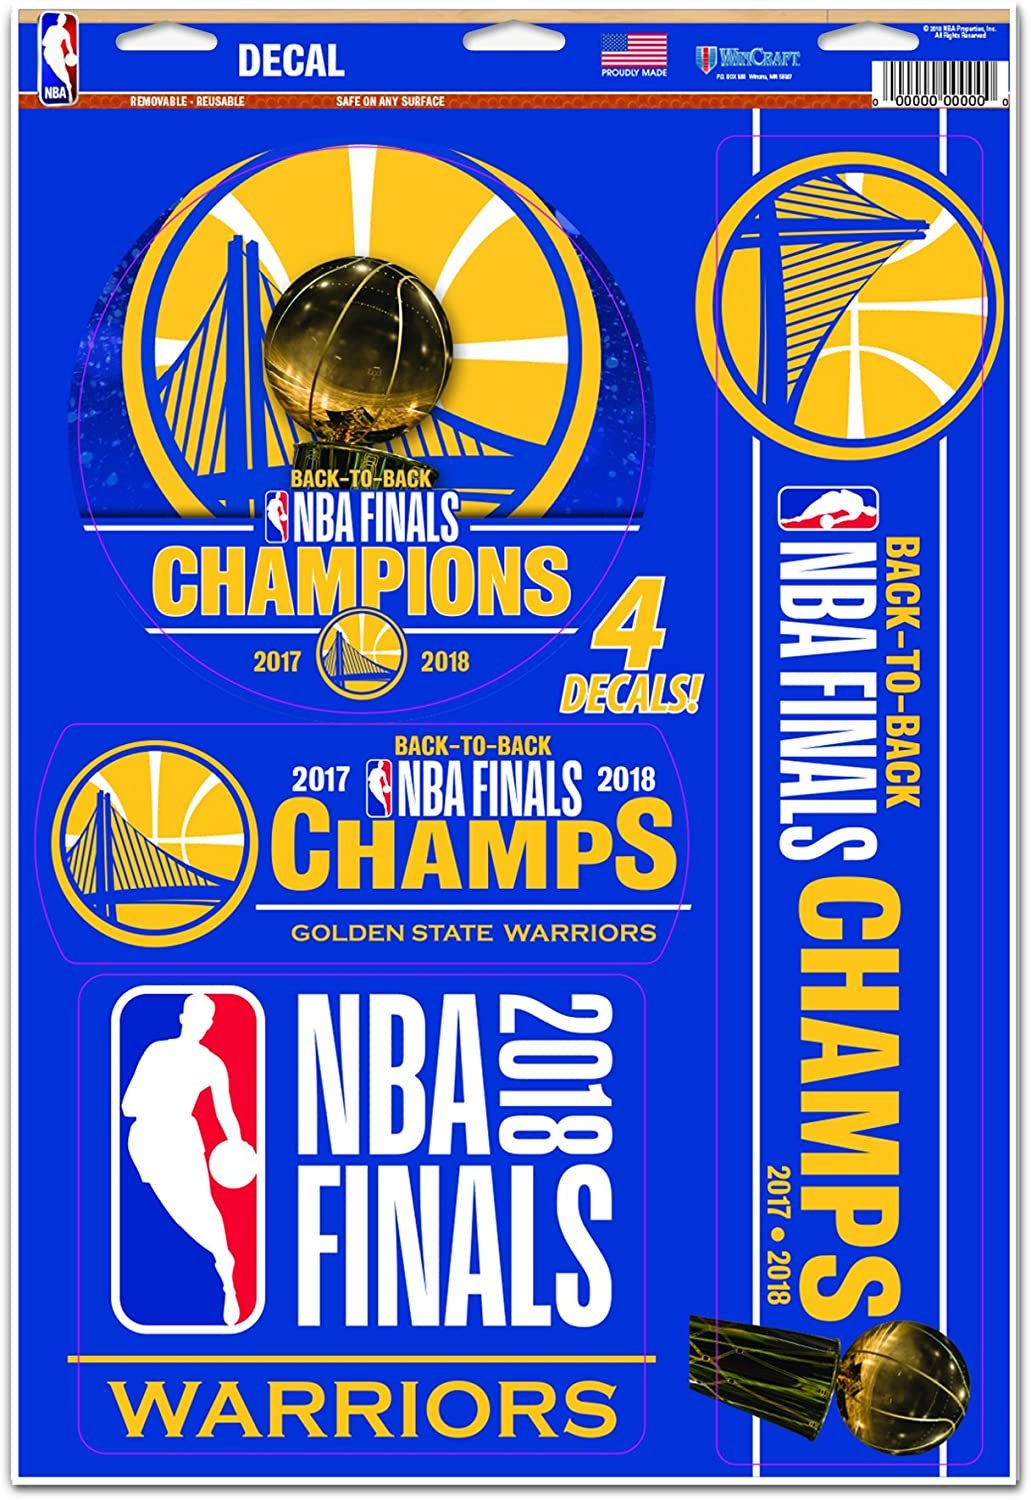 Golden State Warriors 2018 NBA Finals Champions 11x17 Inch Multi Decal Sticker Sheet